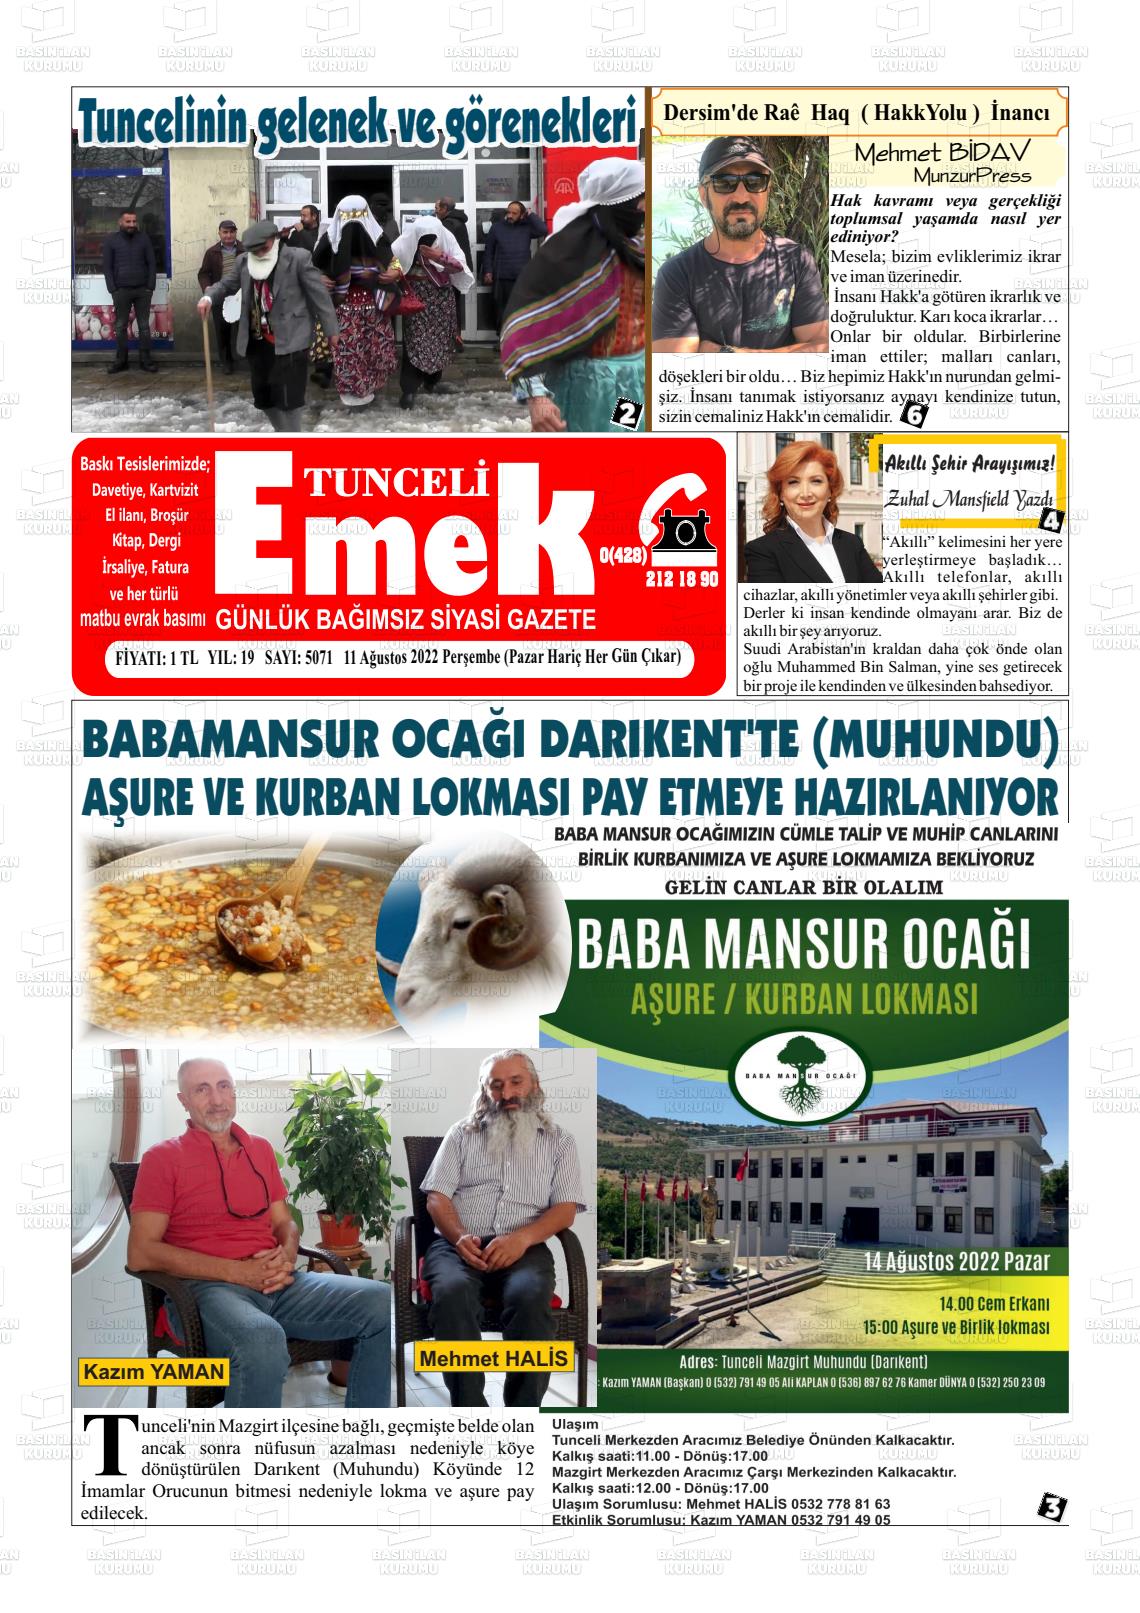 11 Ağustos 2022 Tunceli Emek Gazete Manşeti